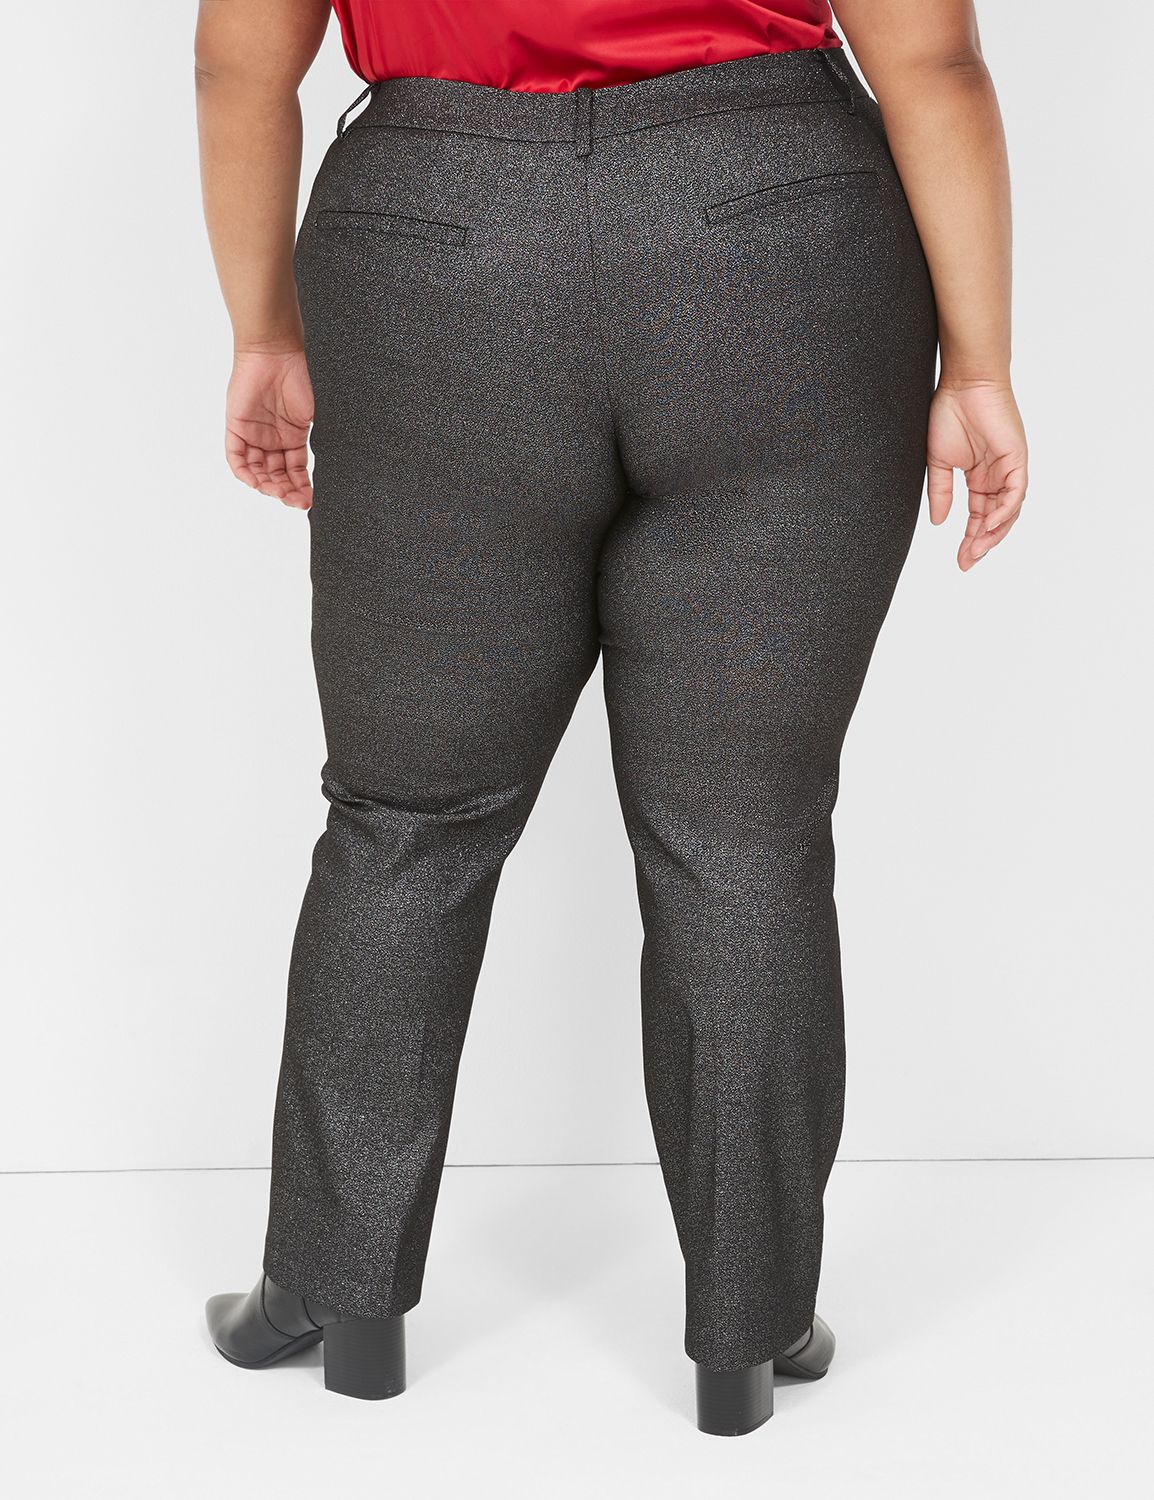 NWT Lane Bryant Long Pants Women's Size 16 TALL Style 005653